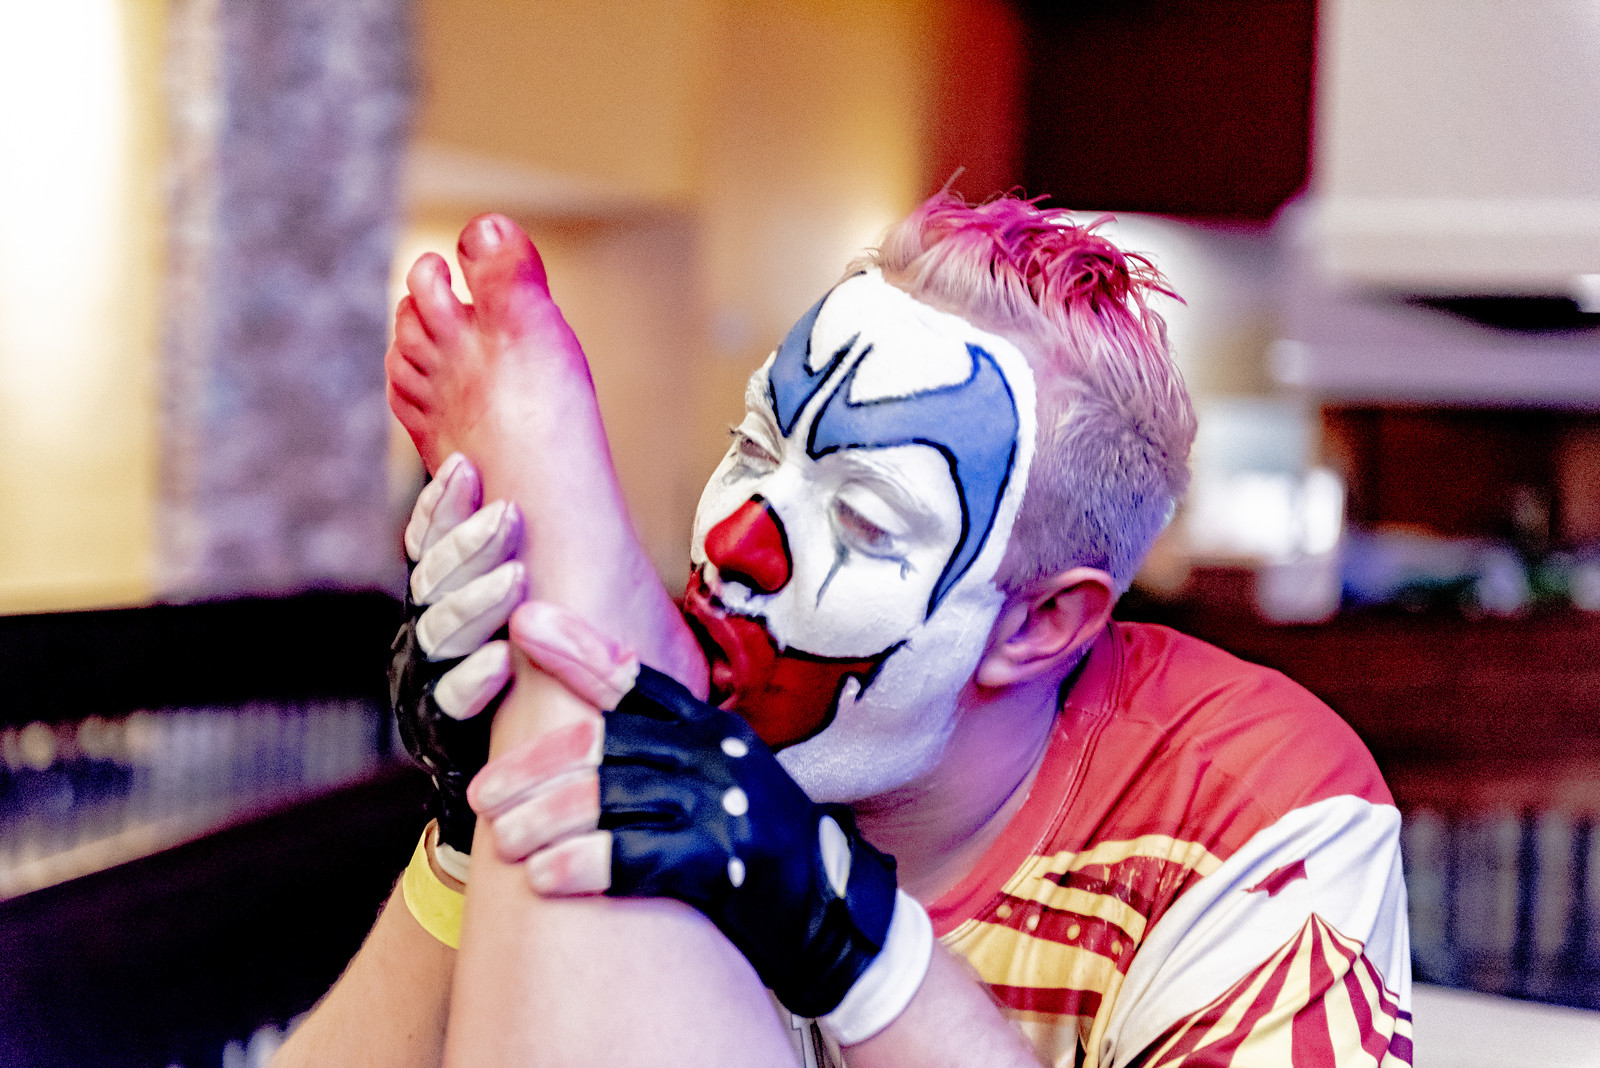 Flip flop the clown